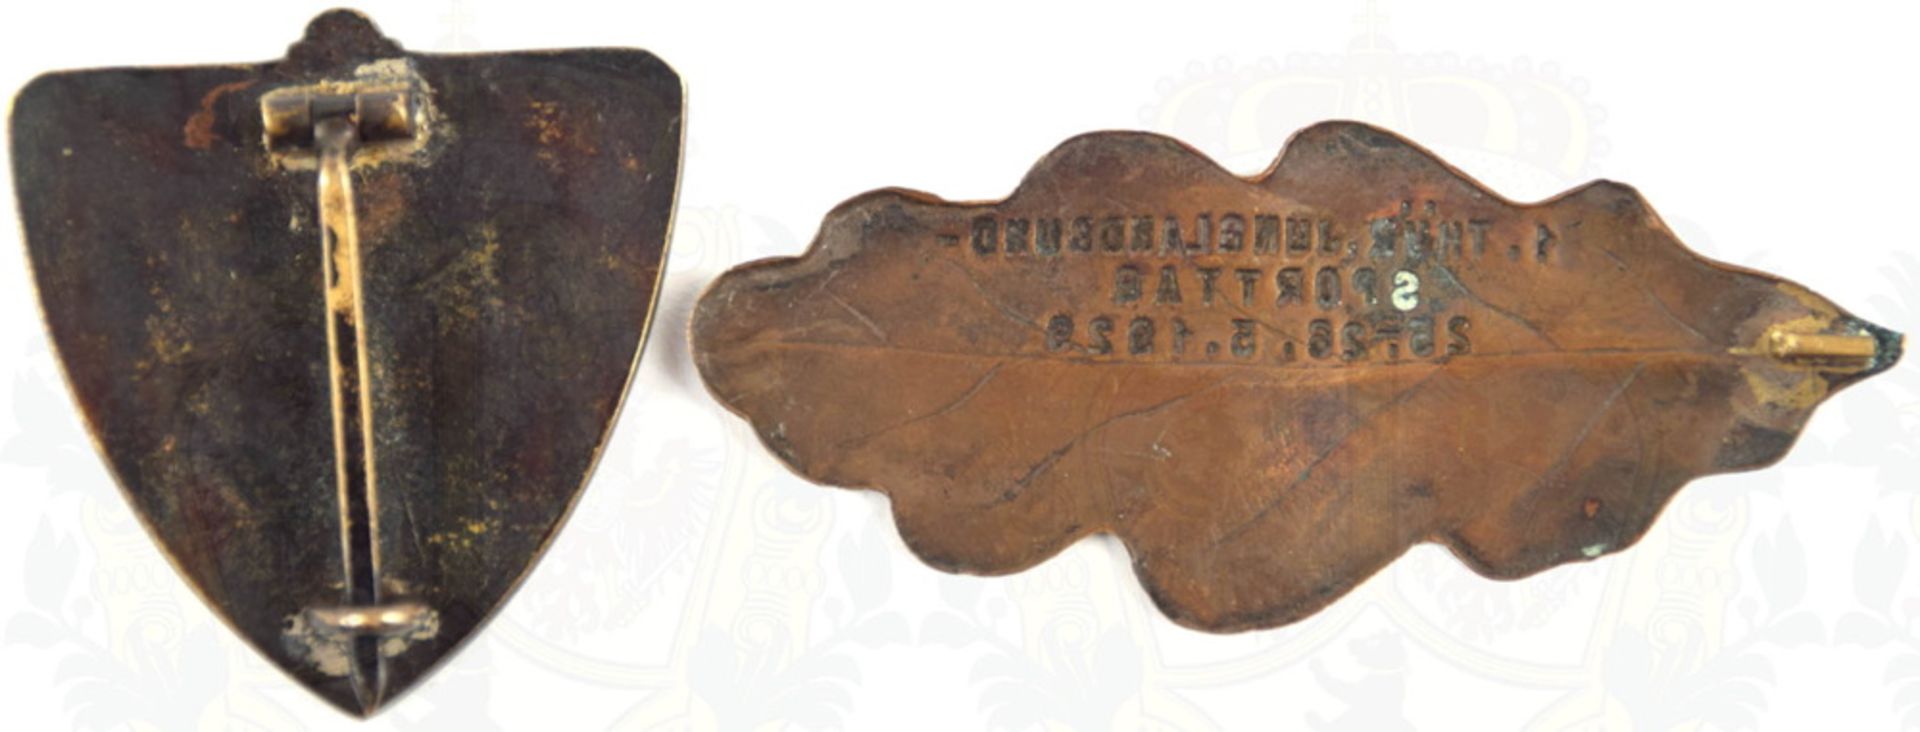 2 ABZEICHEN THÜRINGER JUNGLANDBUND Mitgliedsabzeichen, um 1930, Bronze, dunkel patiniert, flache - Image 2 of 2